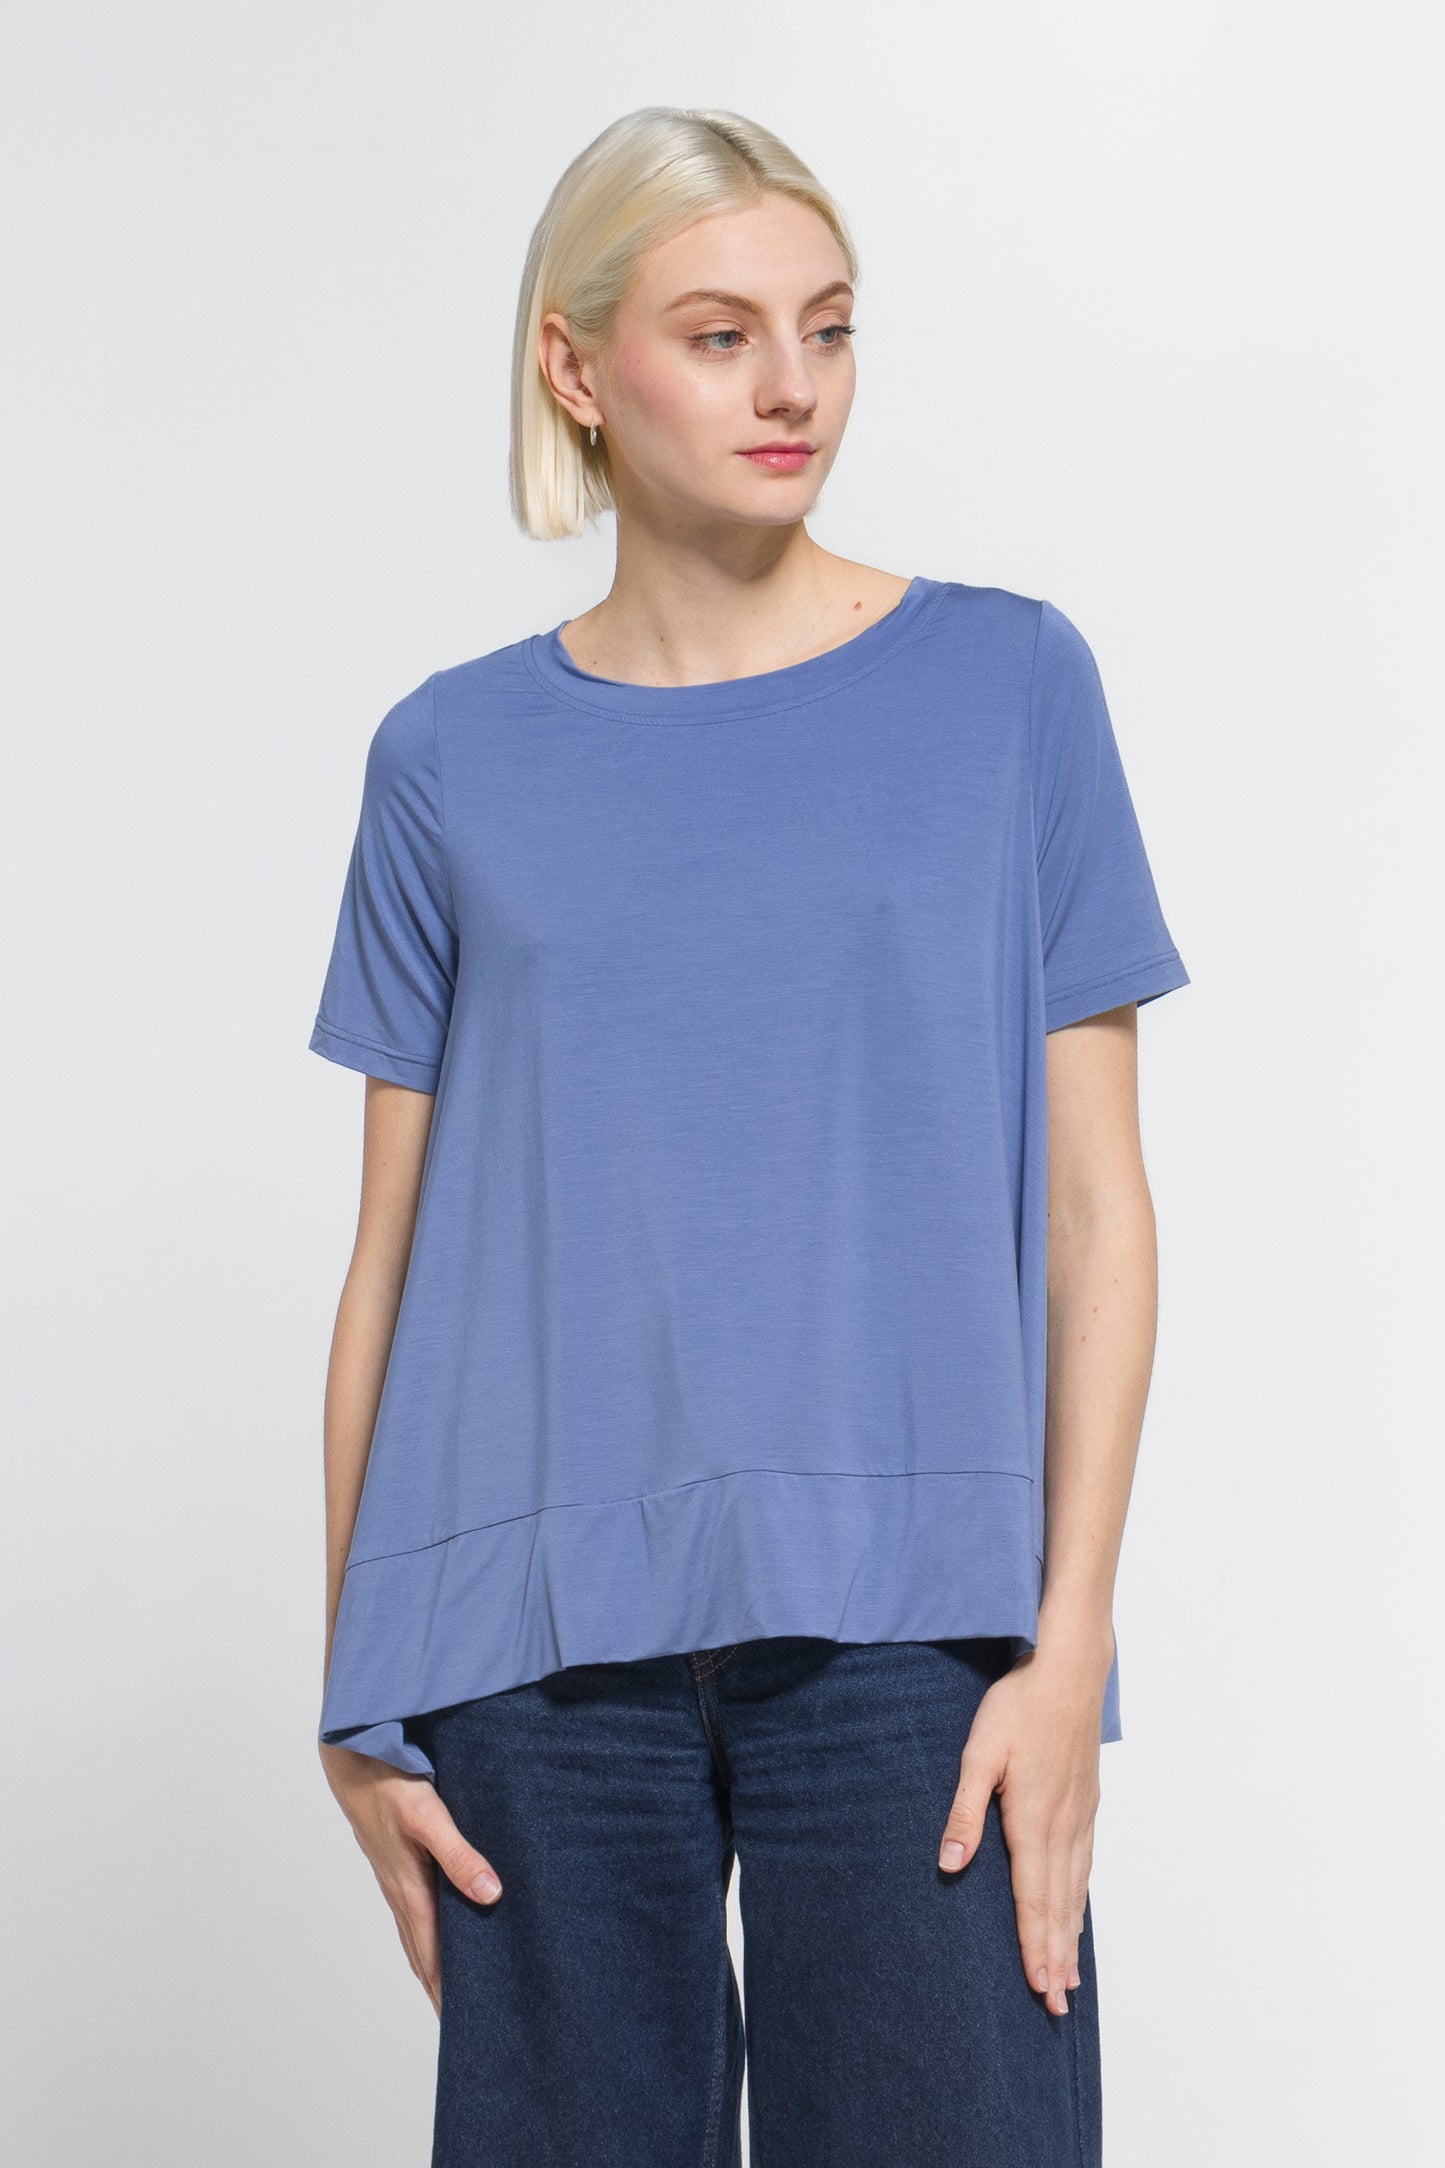 T-shirt Woman Modal 1335